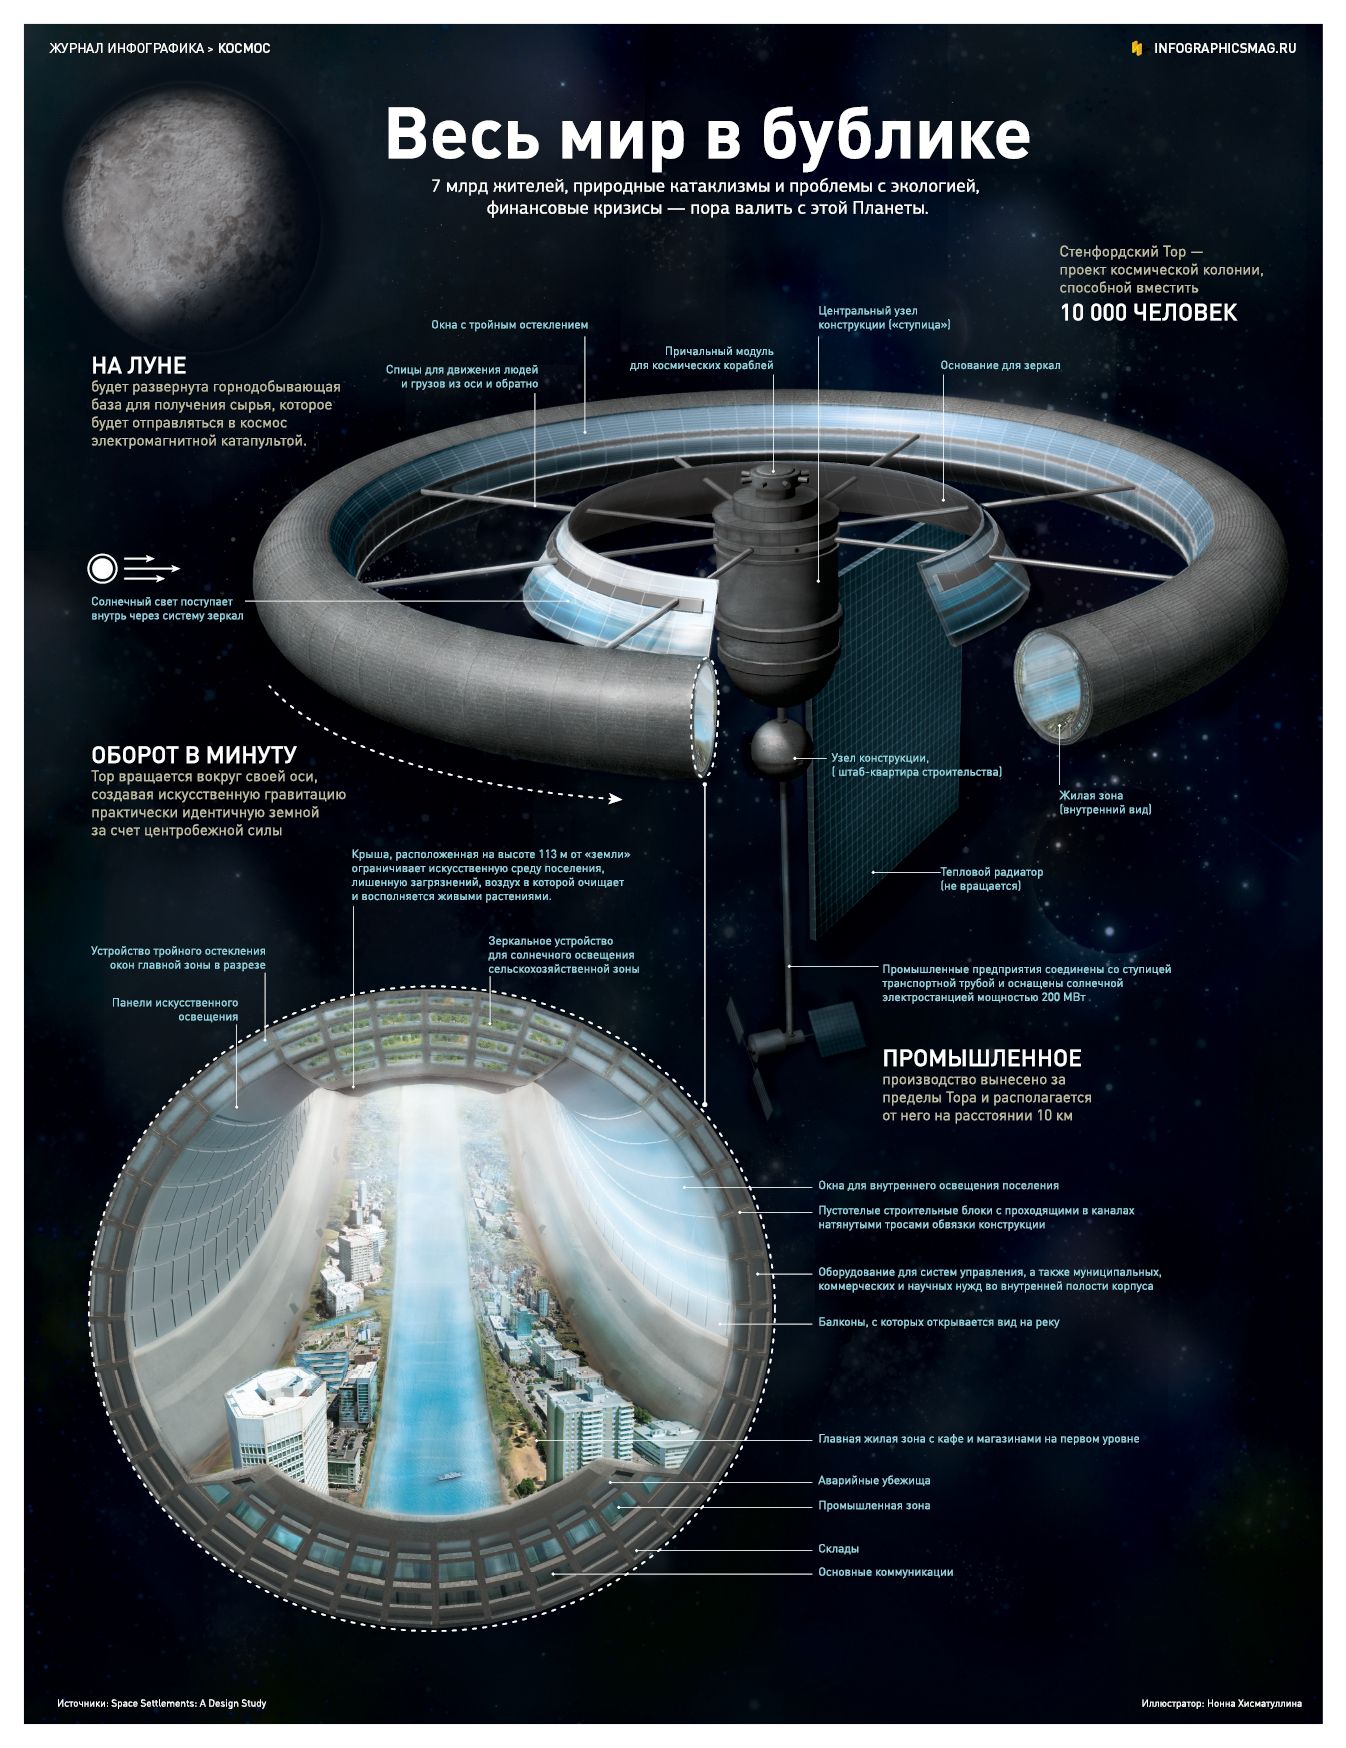 Инфографика: Проект колонизации космоса